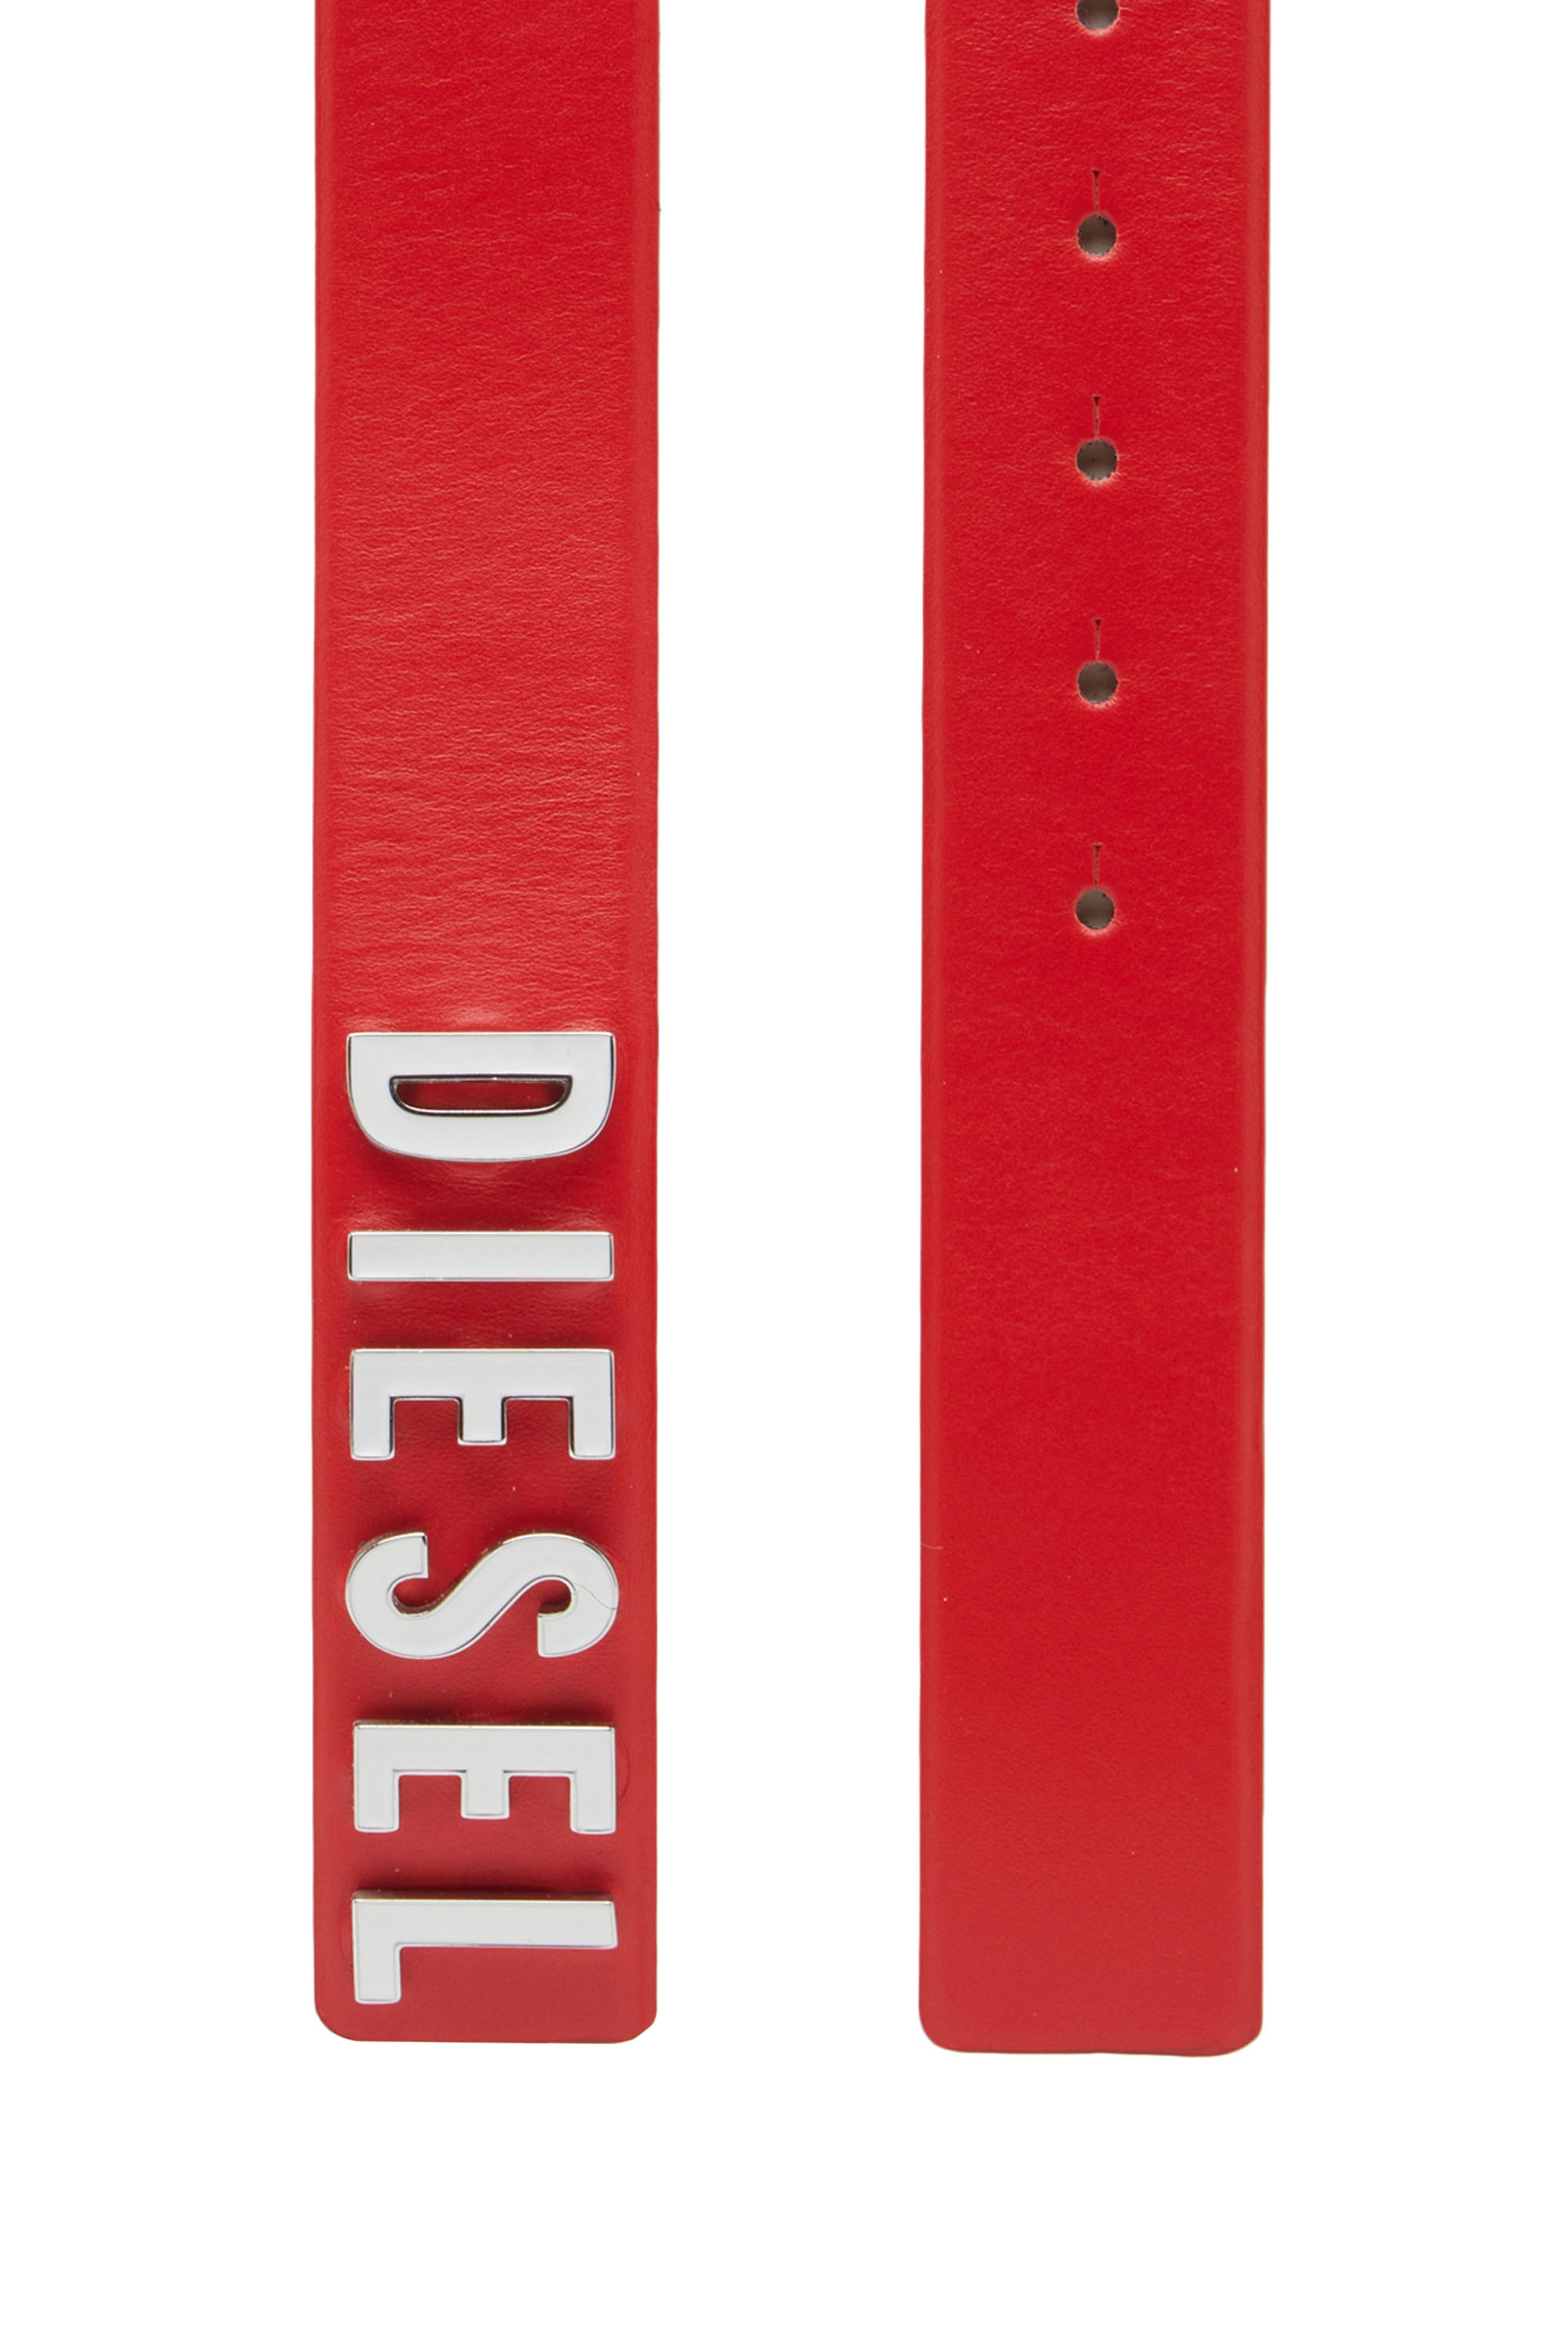 Diesel - B-LETTERS B, Rojo - Image 2